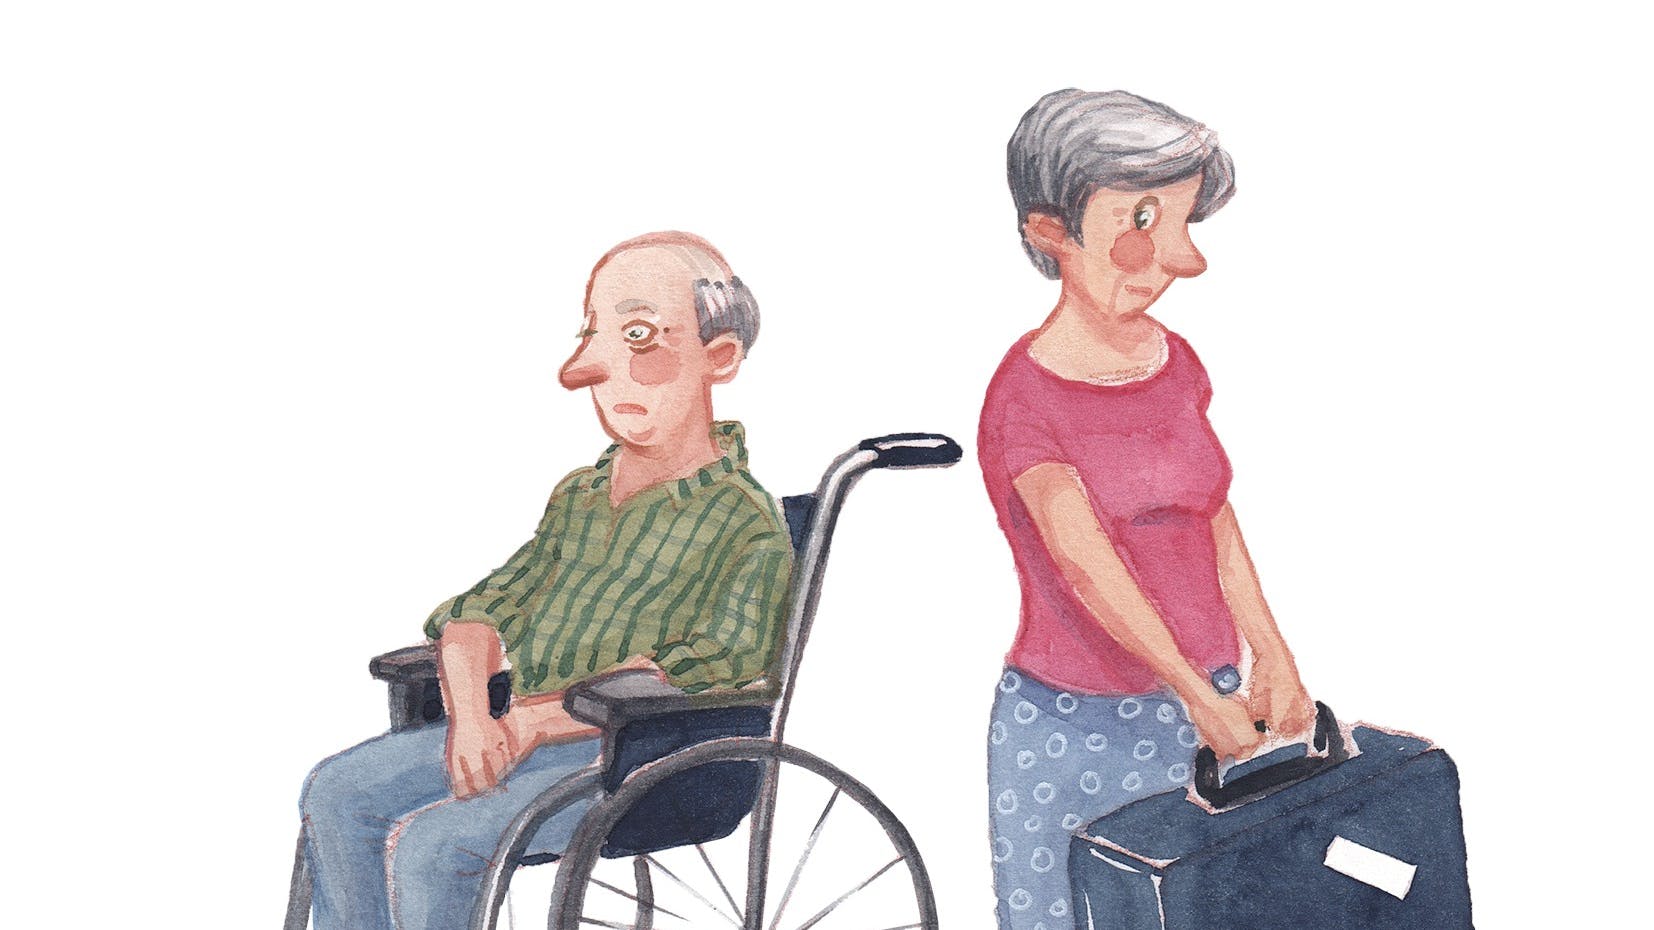 To ældre personer, hvor kvinden holder en kuffert